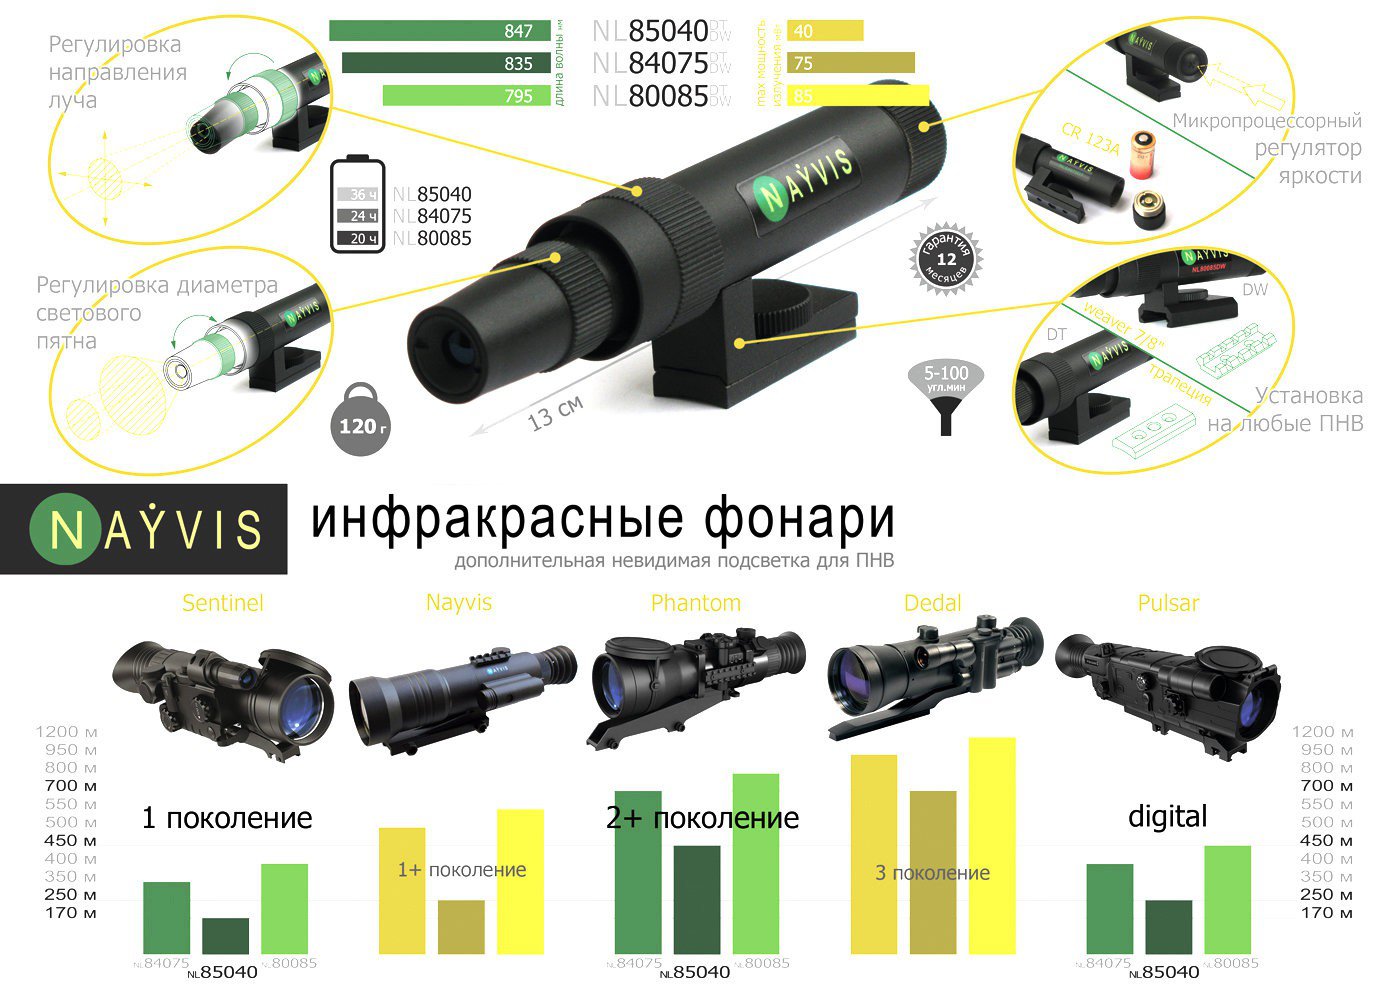 Инфракрасный фонарь NL8085TP купить по оптимальной цене,  доставка по России, гарантия качества